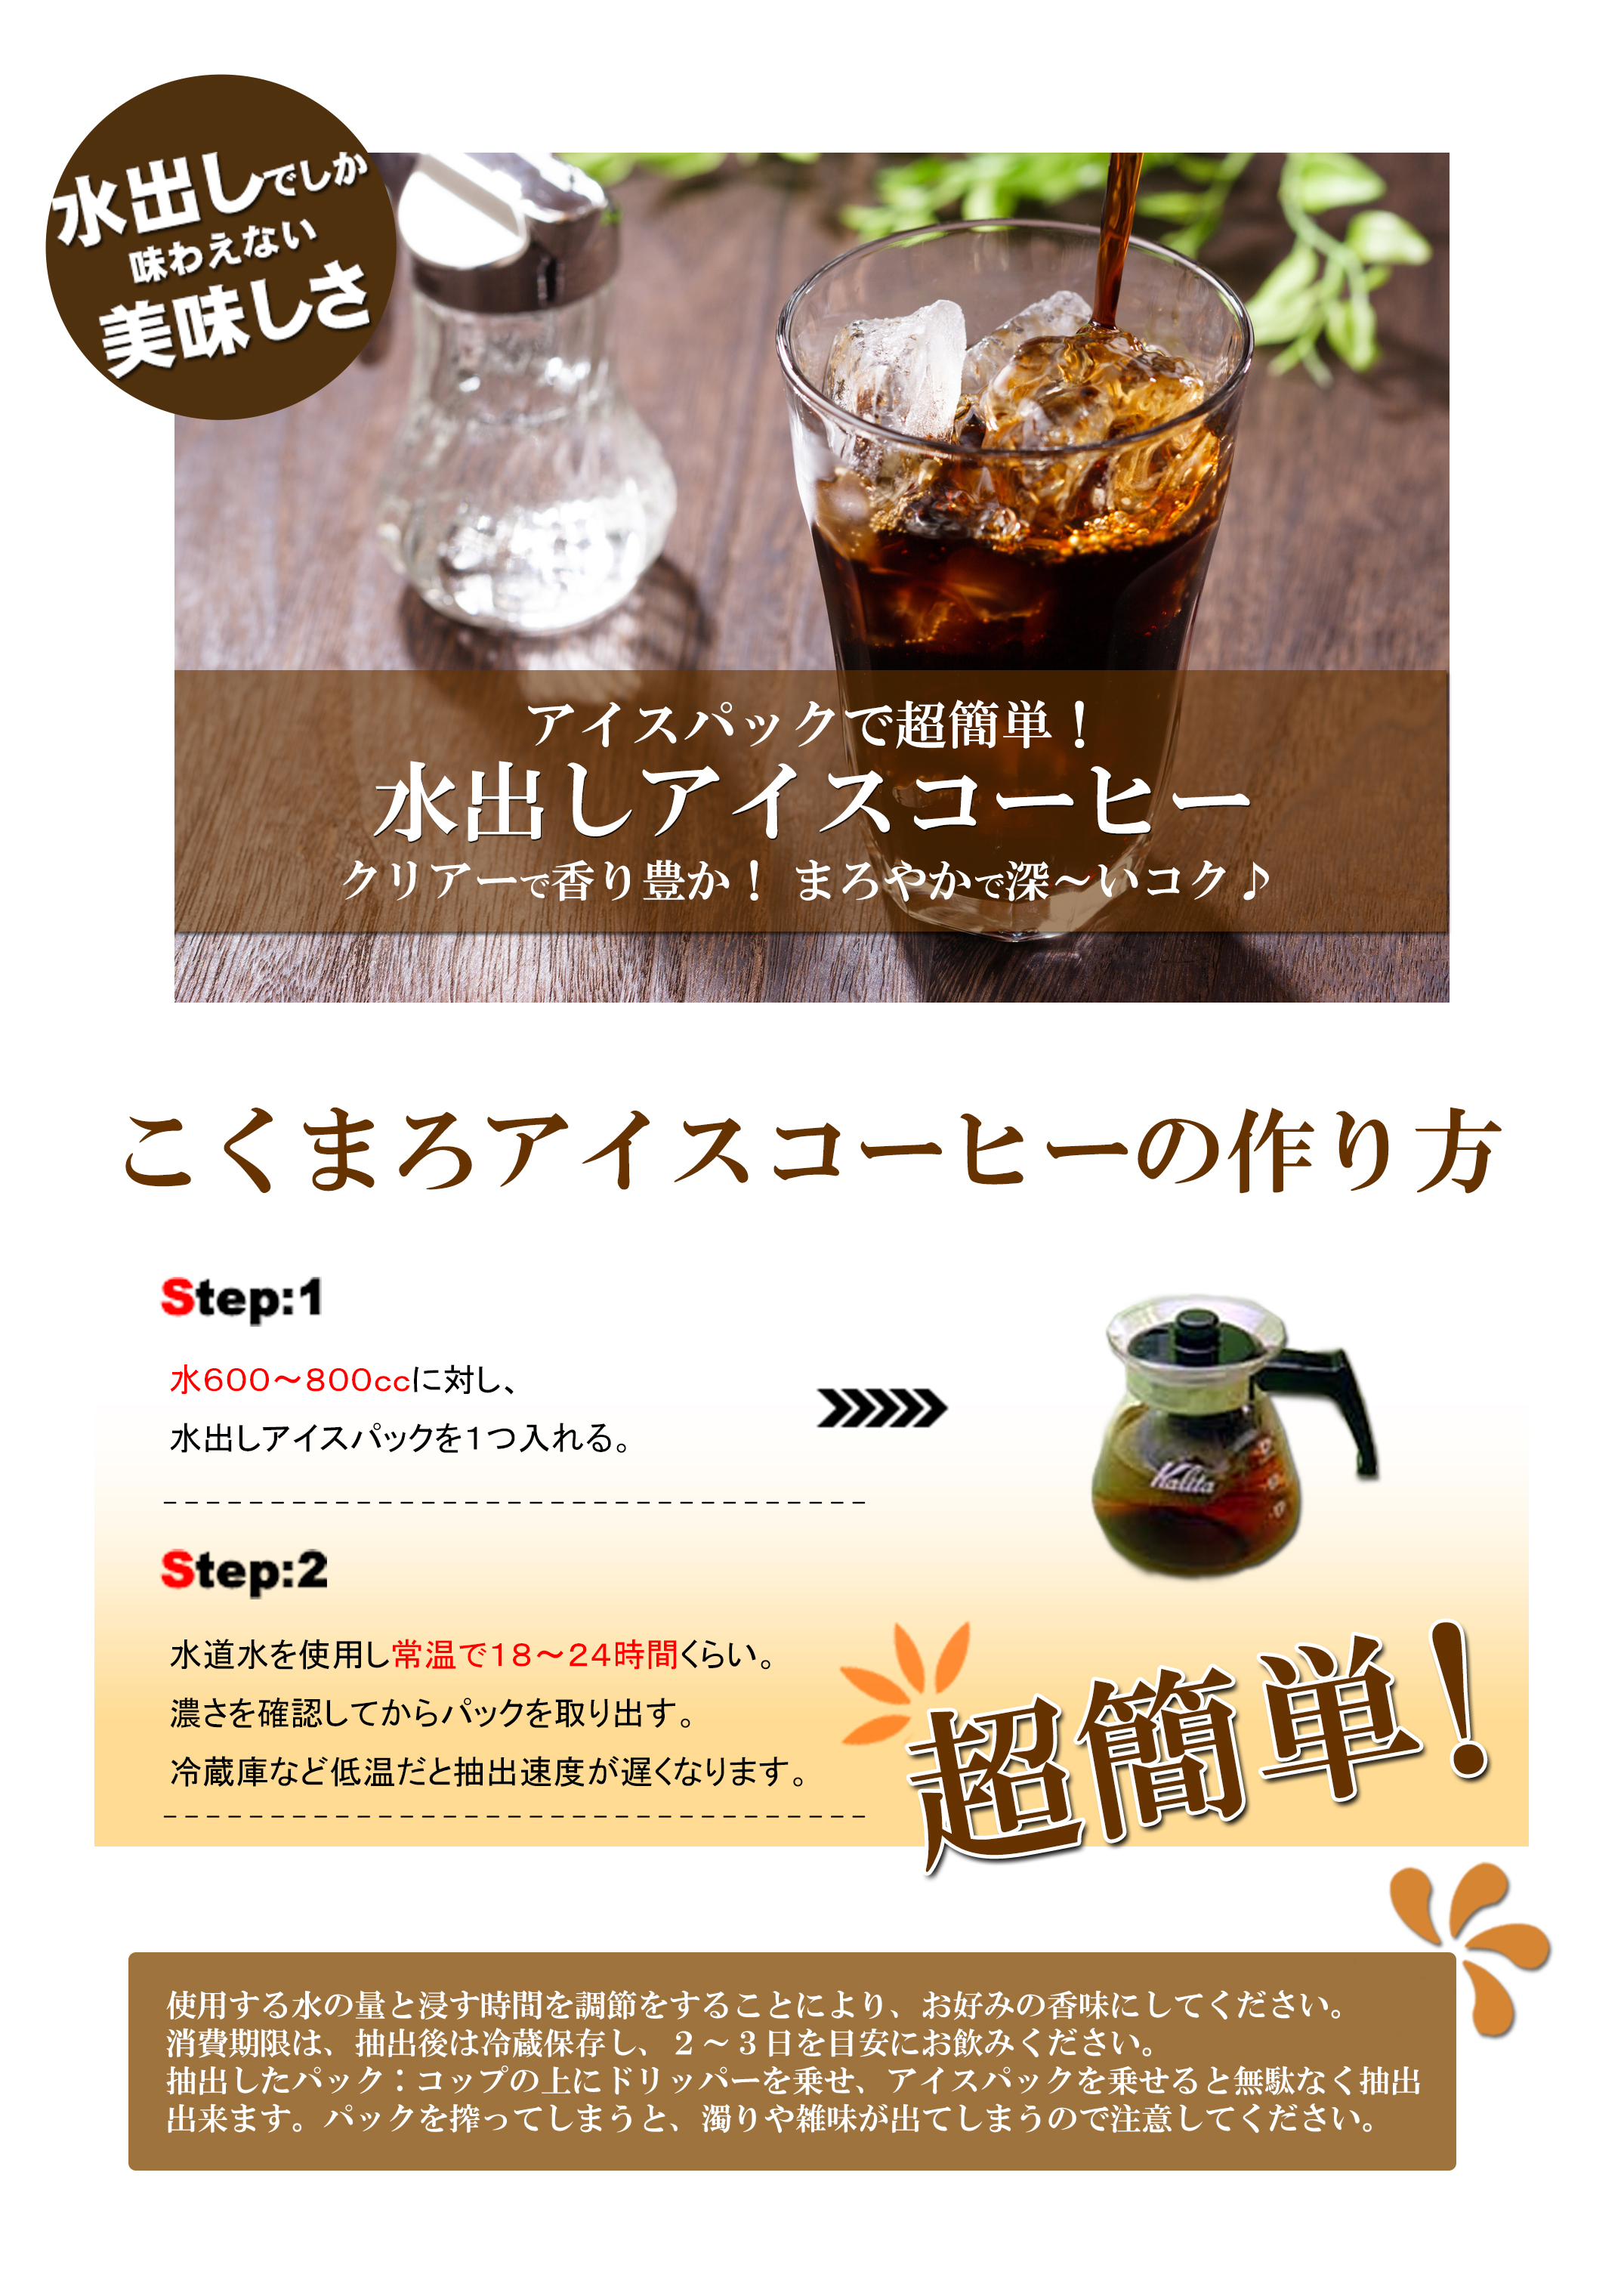 【水出しコーヒー】マンデリンG1(40g×4パック)